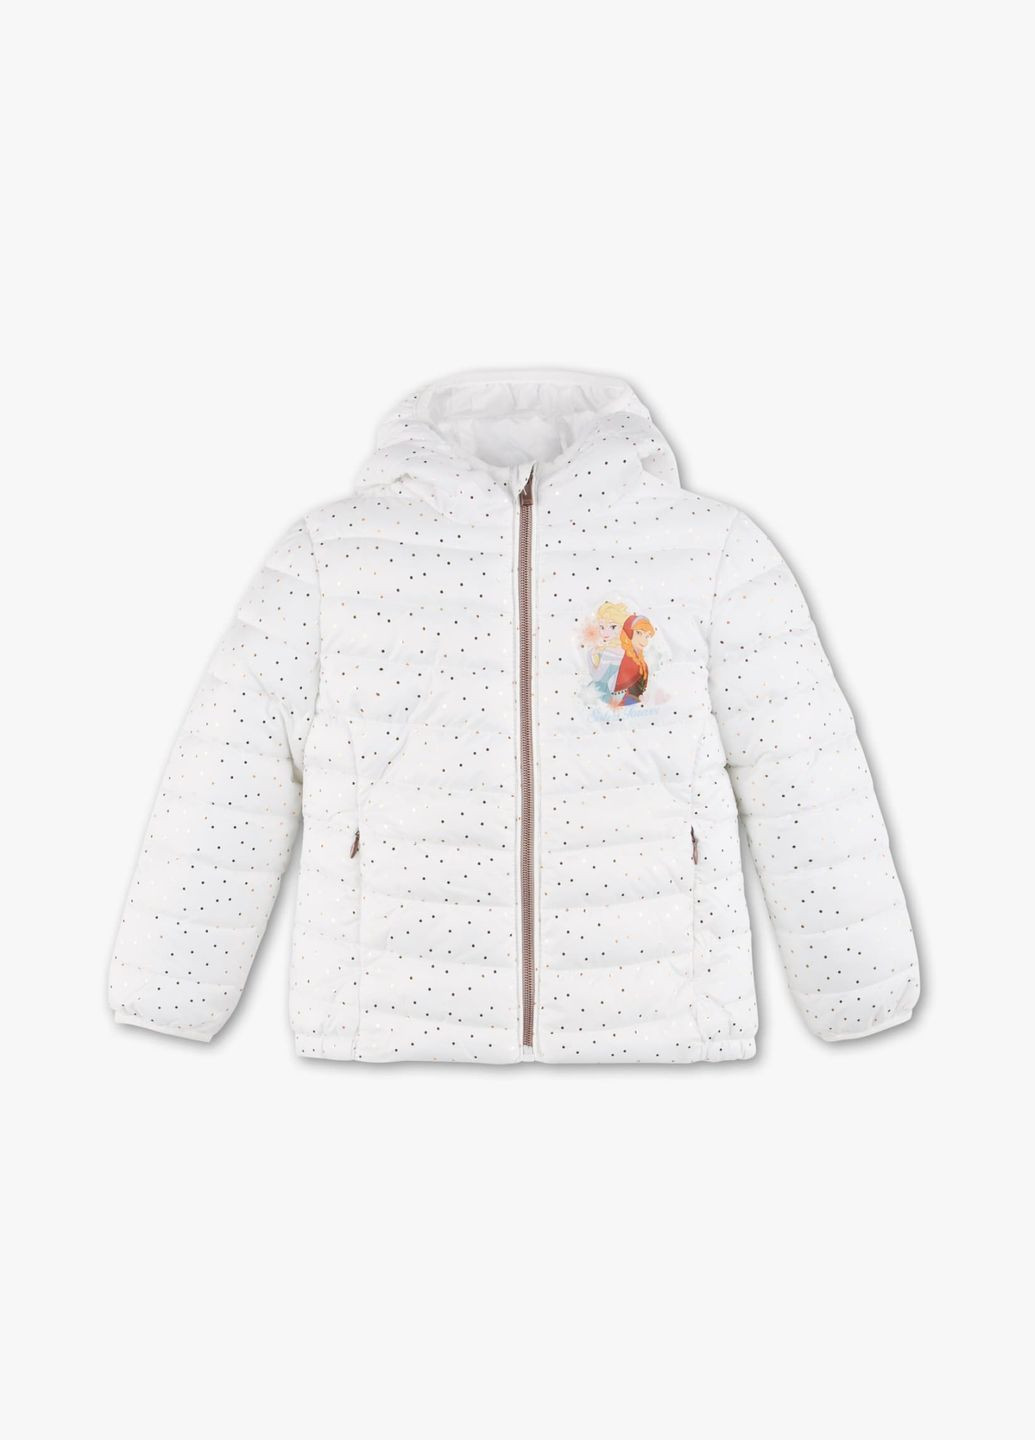 Біла дитяча демісезонна куртка для дівчинки frozen 92 розмір біла 1033169 C&A